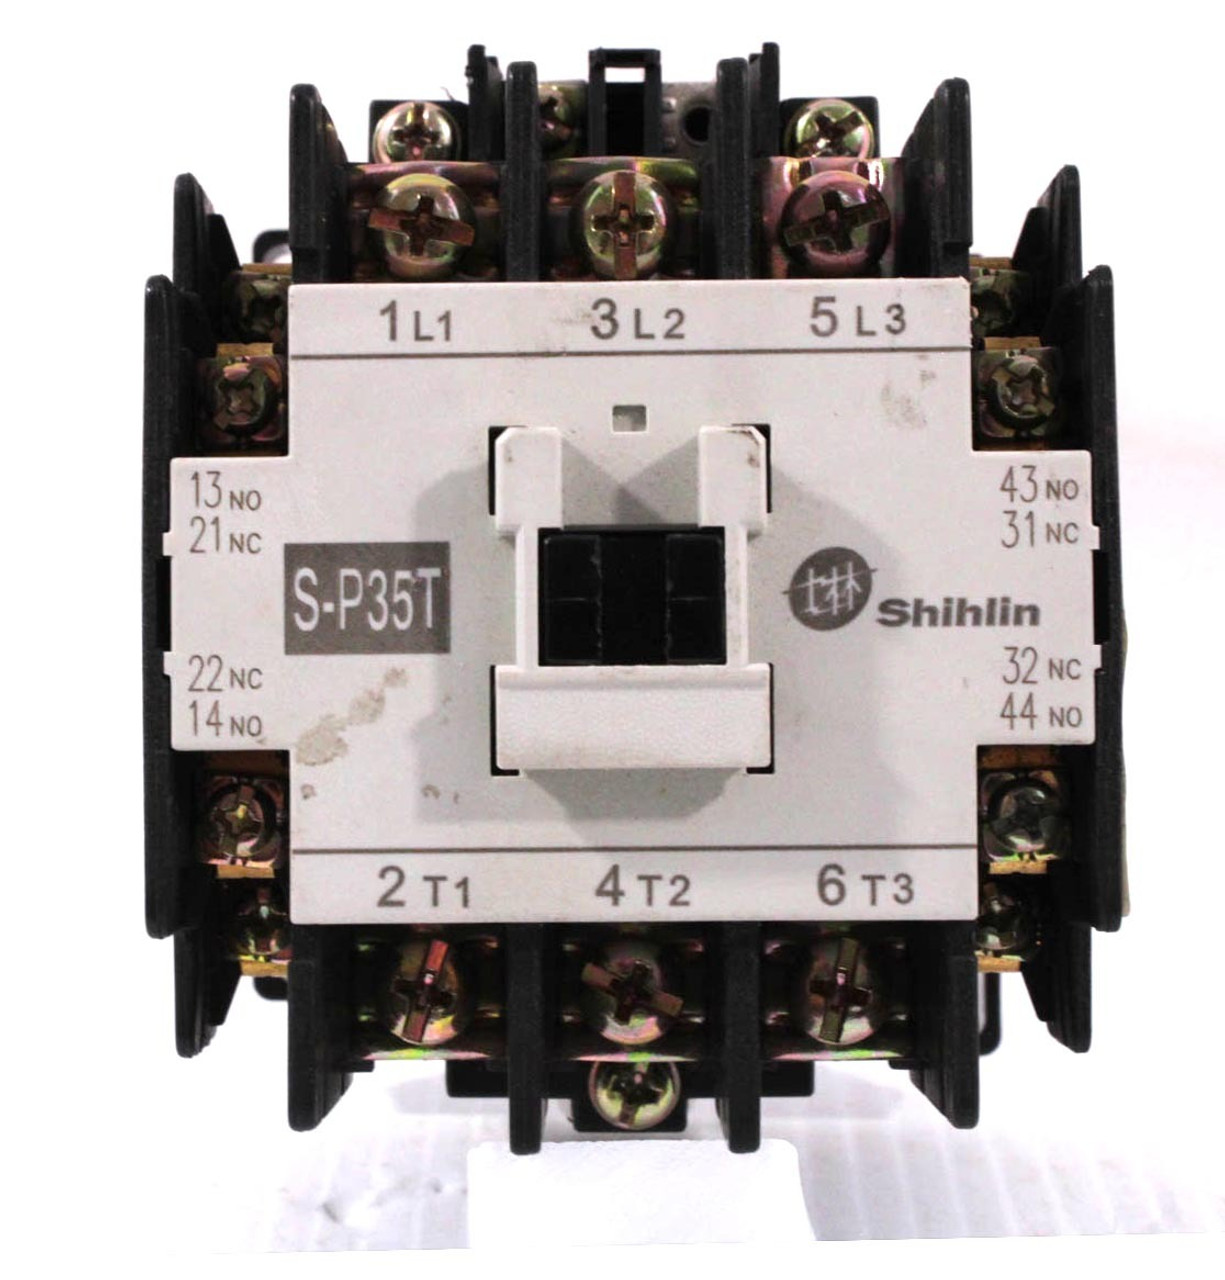 Shihlin S-P35T Magnetic Contactor 50A 600V Size 2 Coil 200-220V 50Hz/220V 60Hz